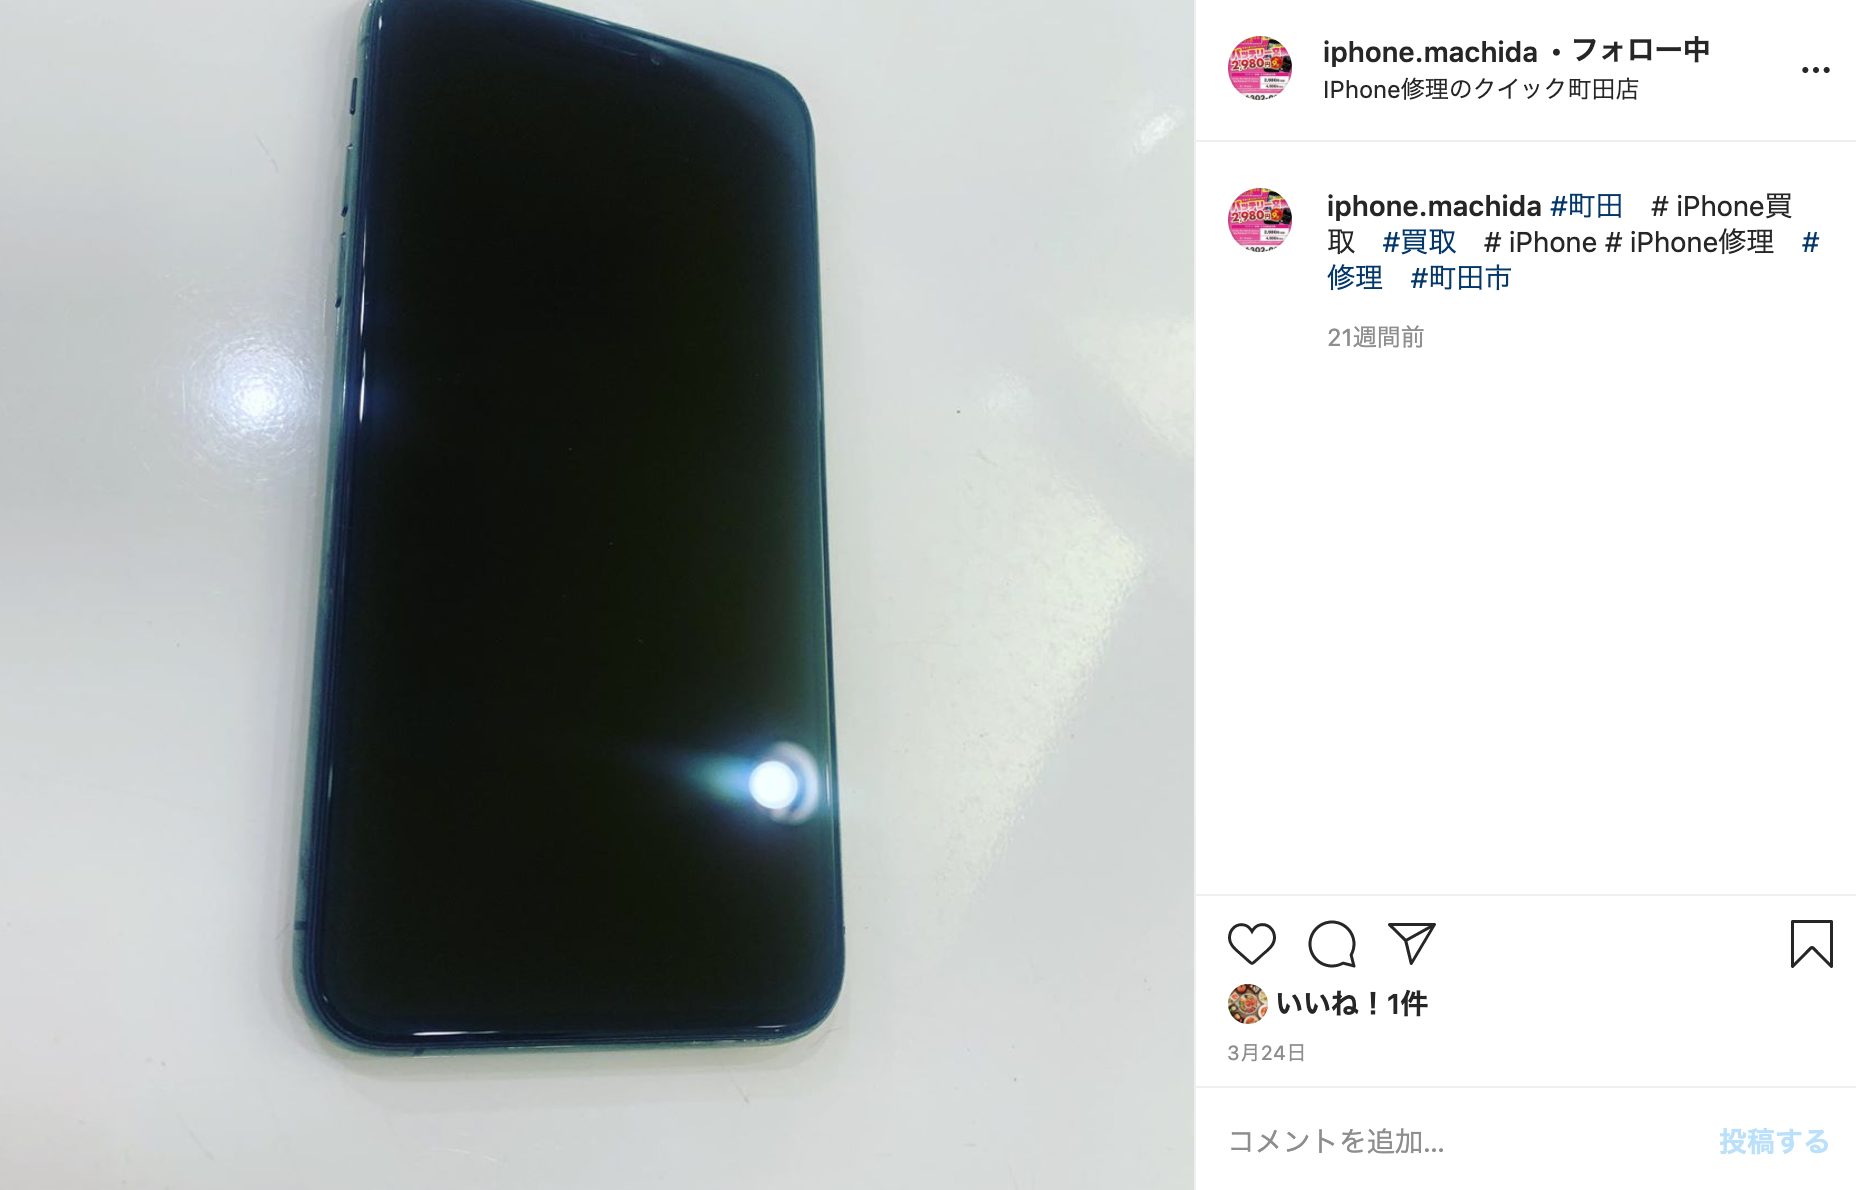 https://www.instagram.com/iphone.machida/